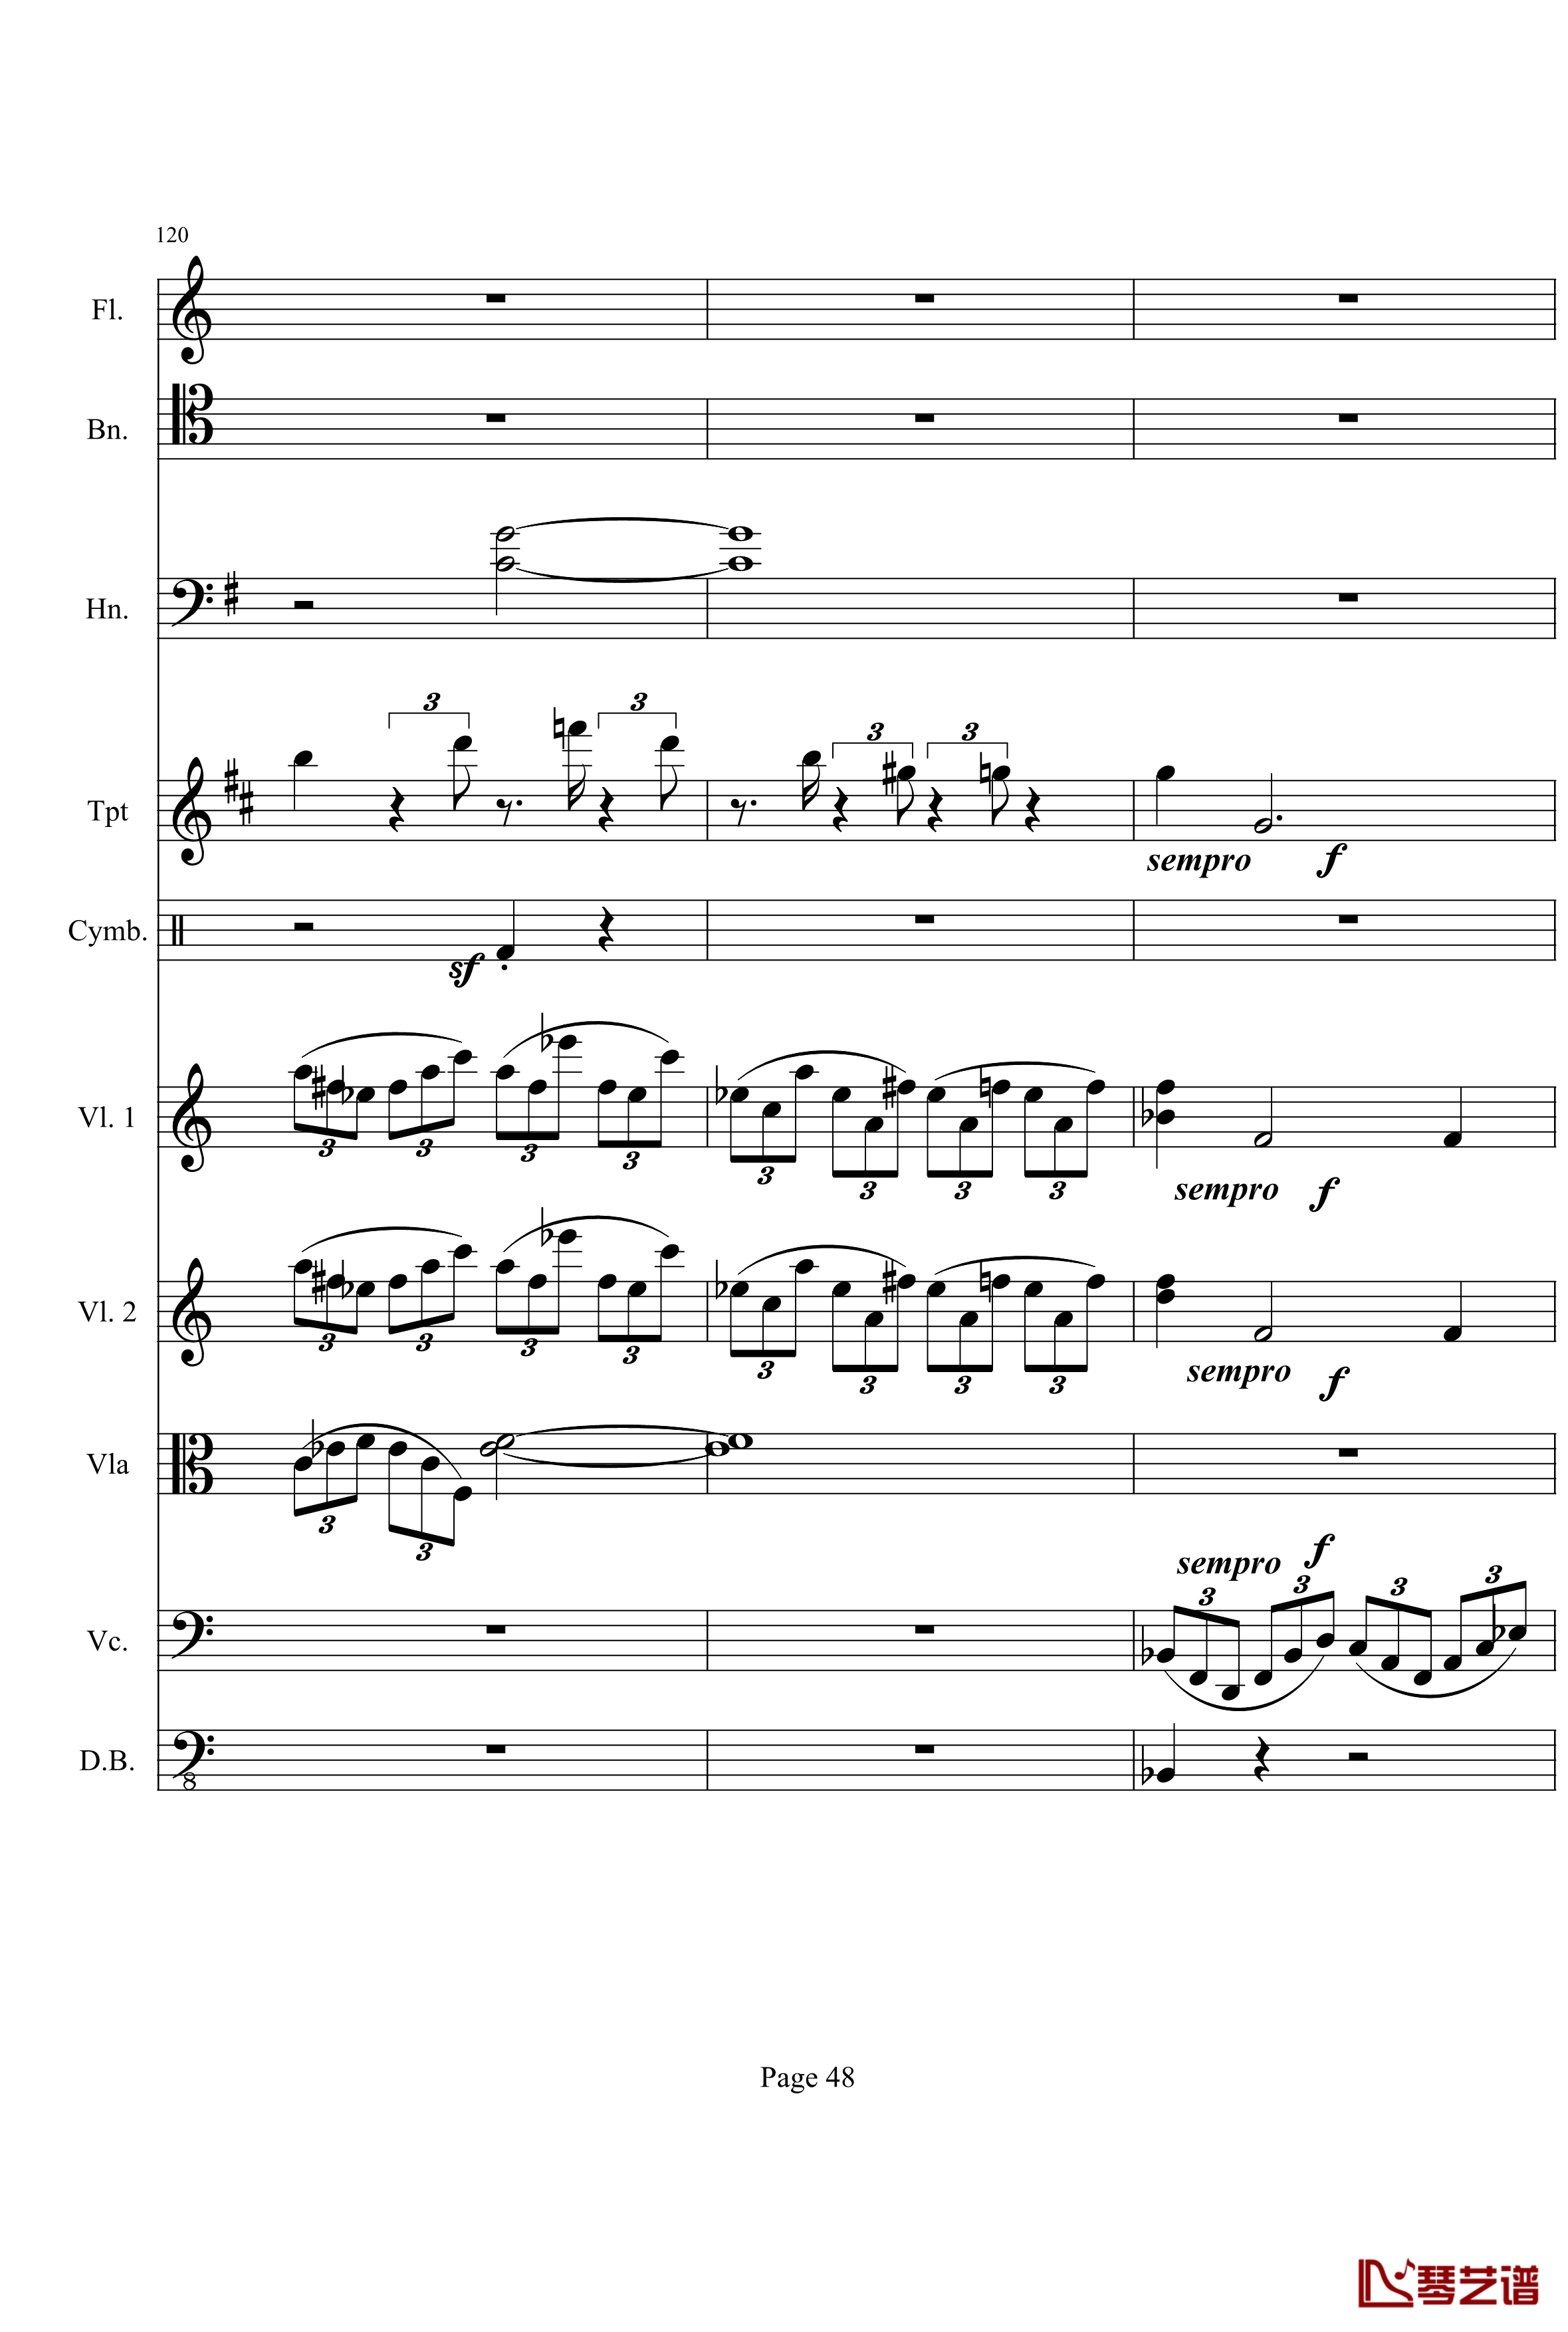 奏鸣曲之交响钢琴谱-第21-Ⅰ-贝多芬-beethoven48